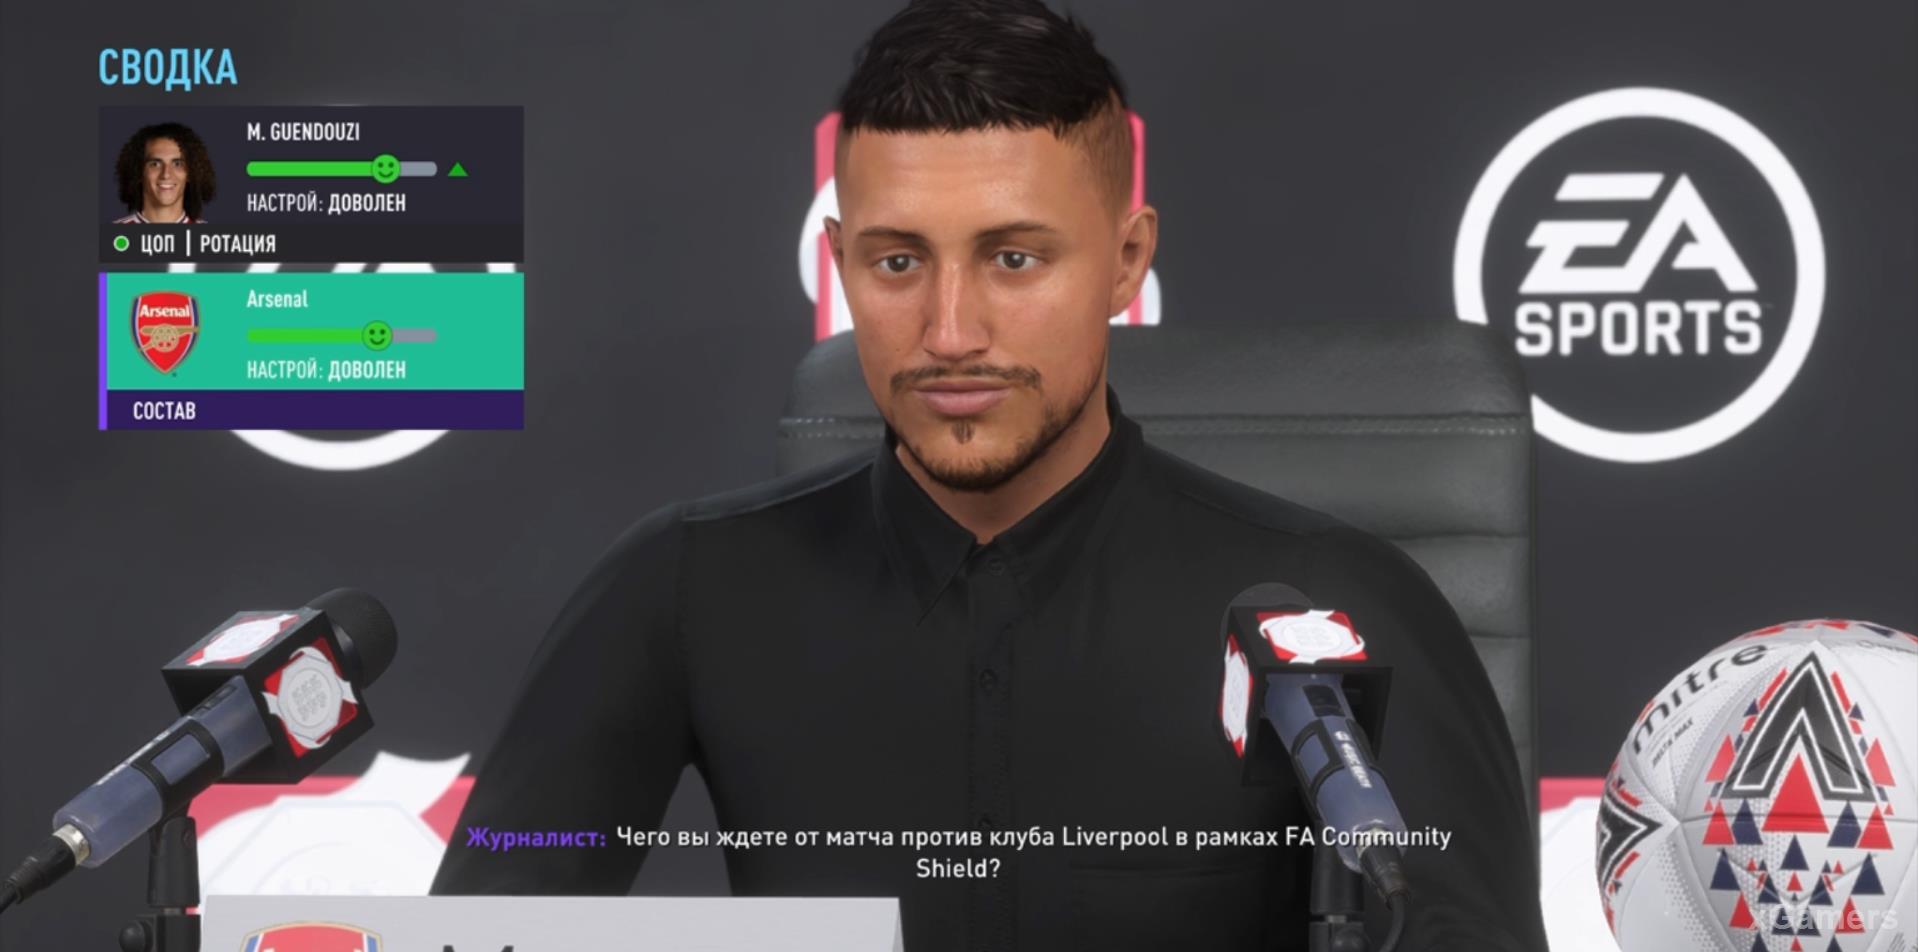 Скриншот геймплея с пресс-конференции в режиме карьеры в FIFA 21